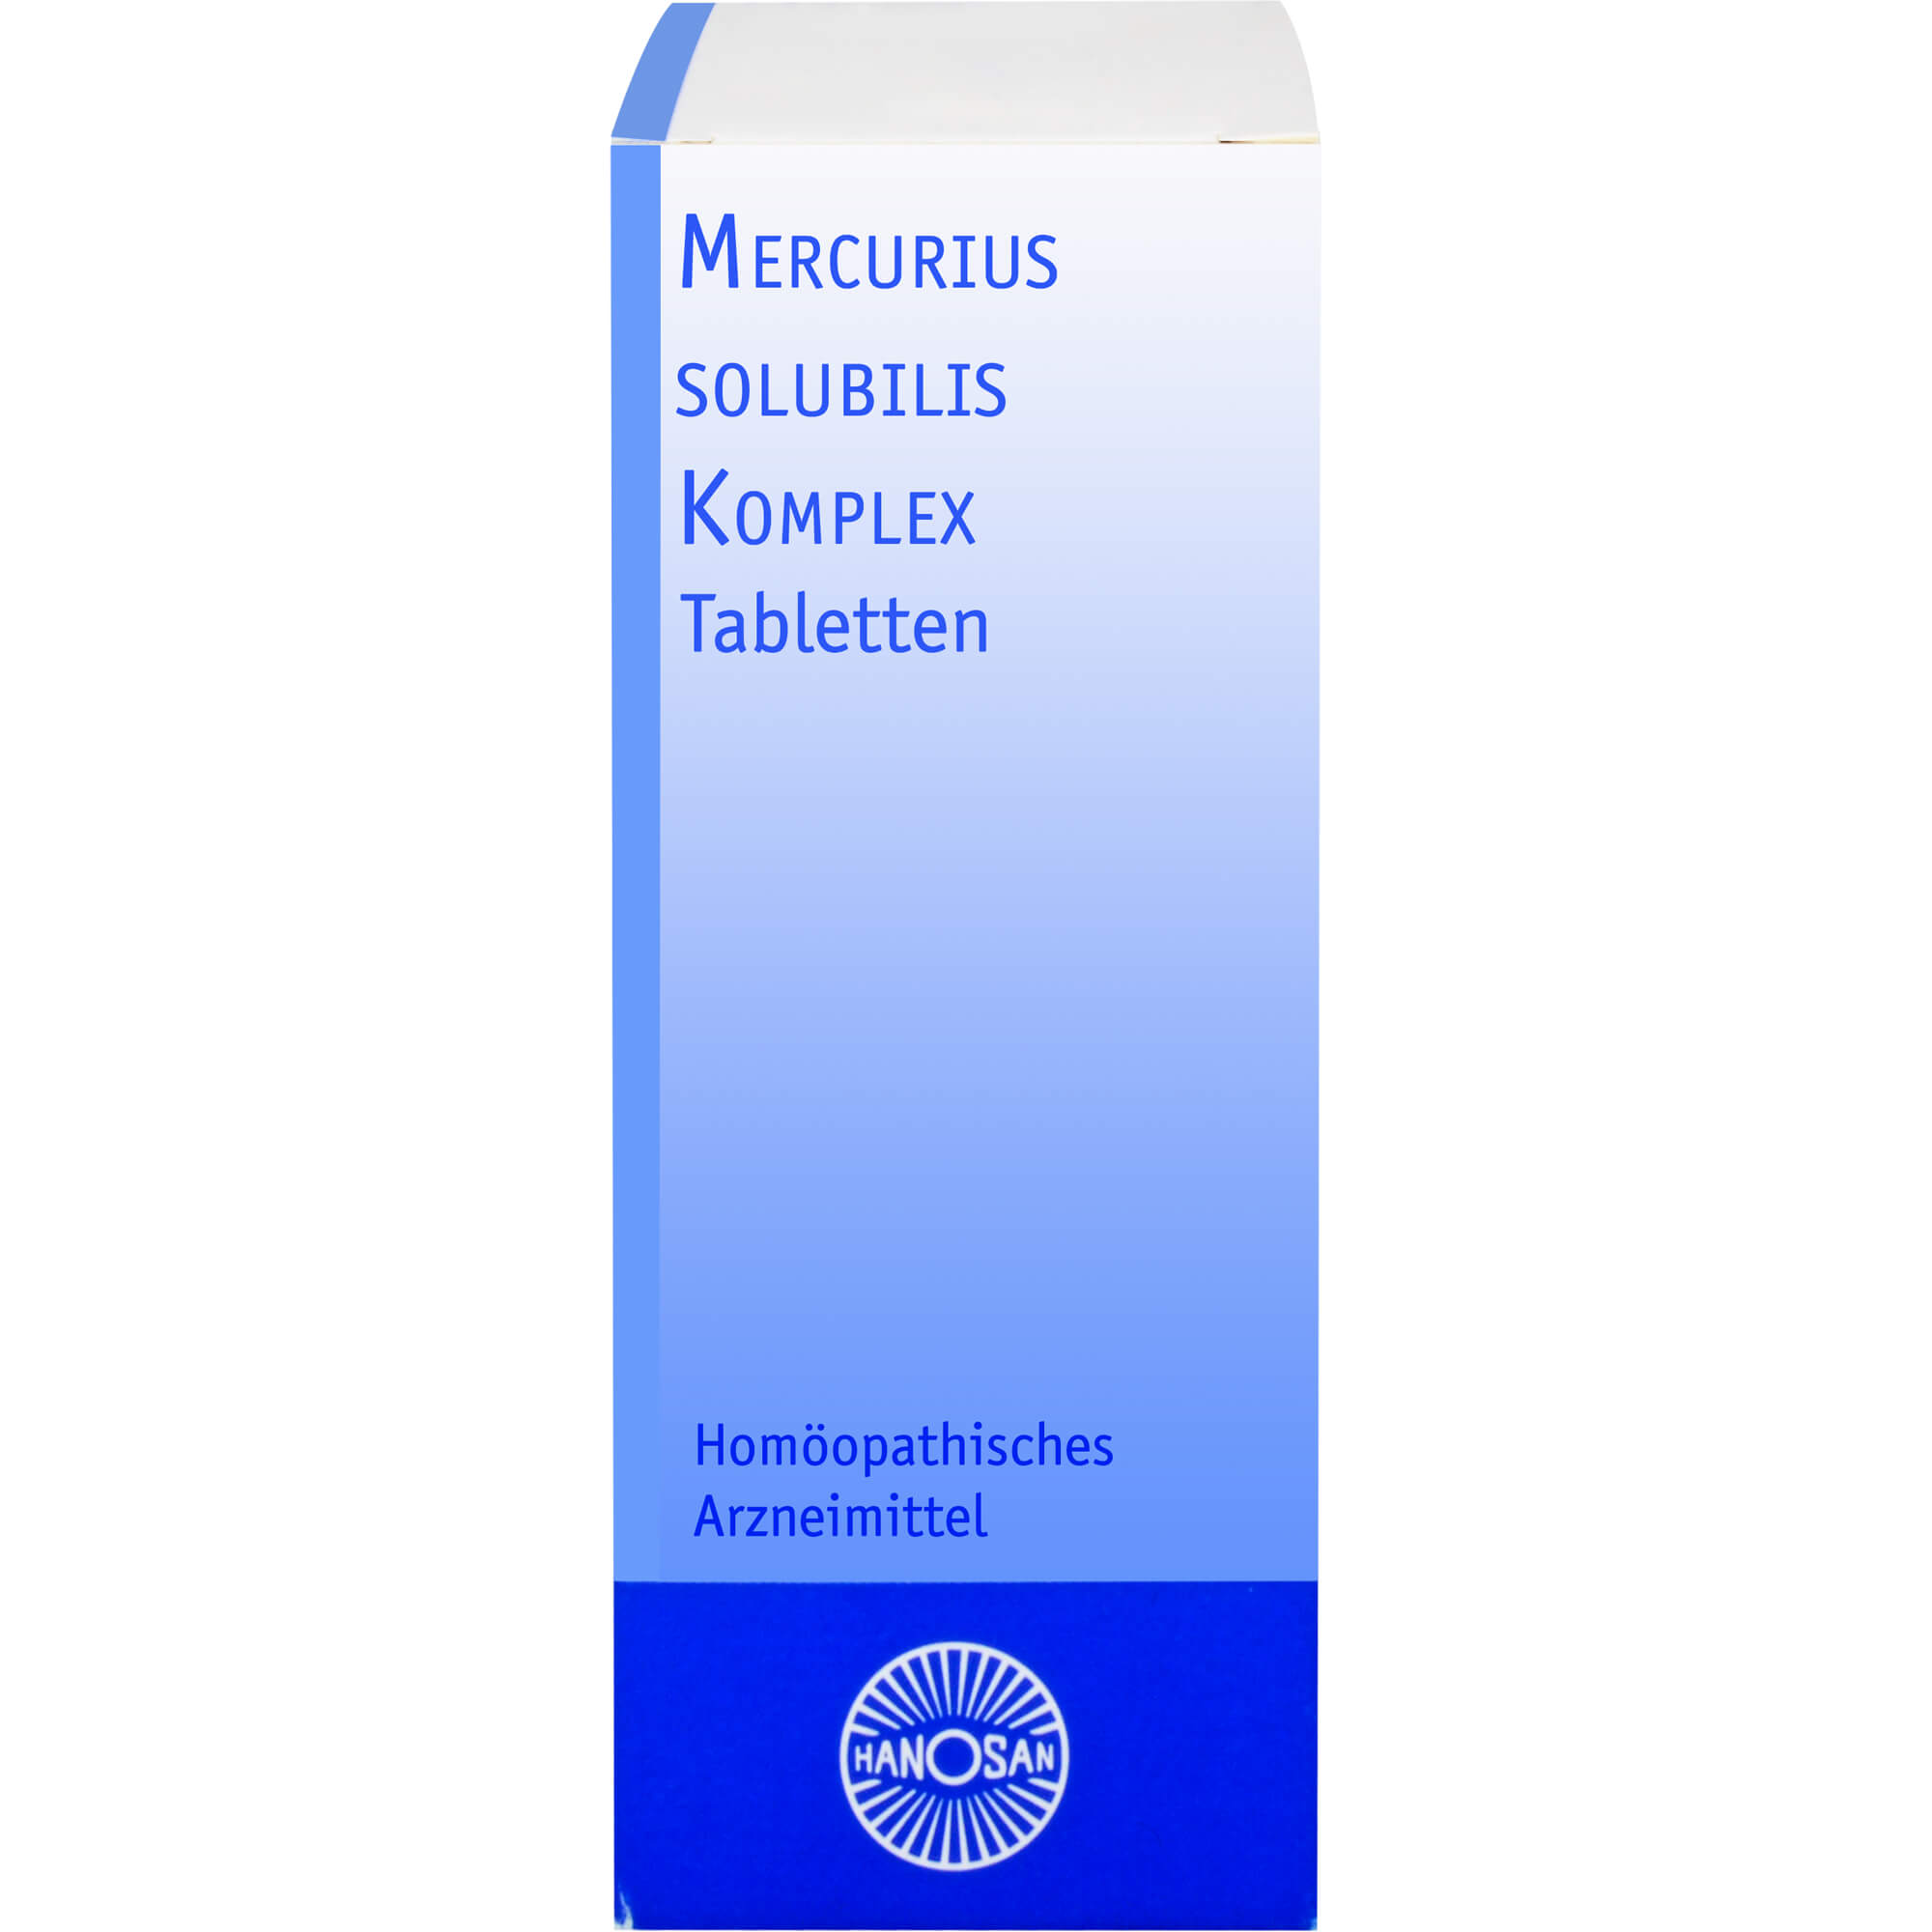 MERCURIUS SOLUBILIS KOMPLEX Hanosan Tabletten